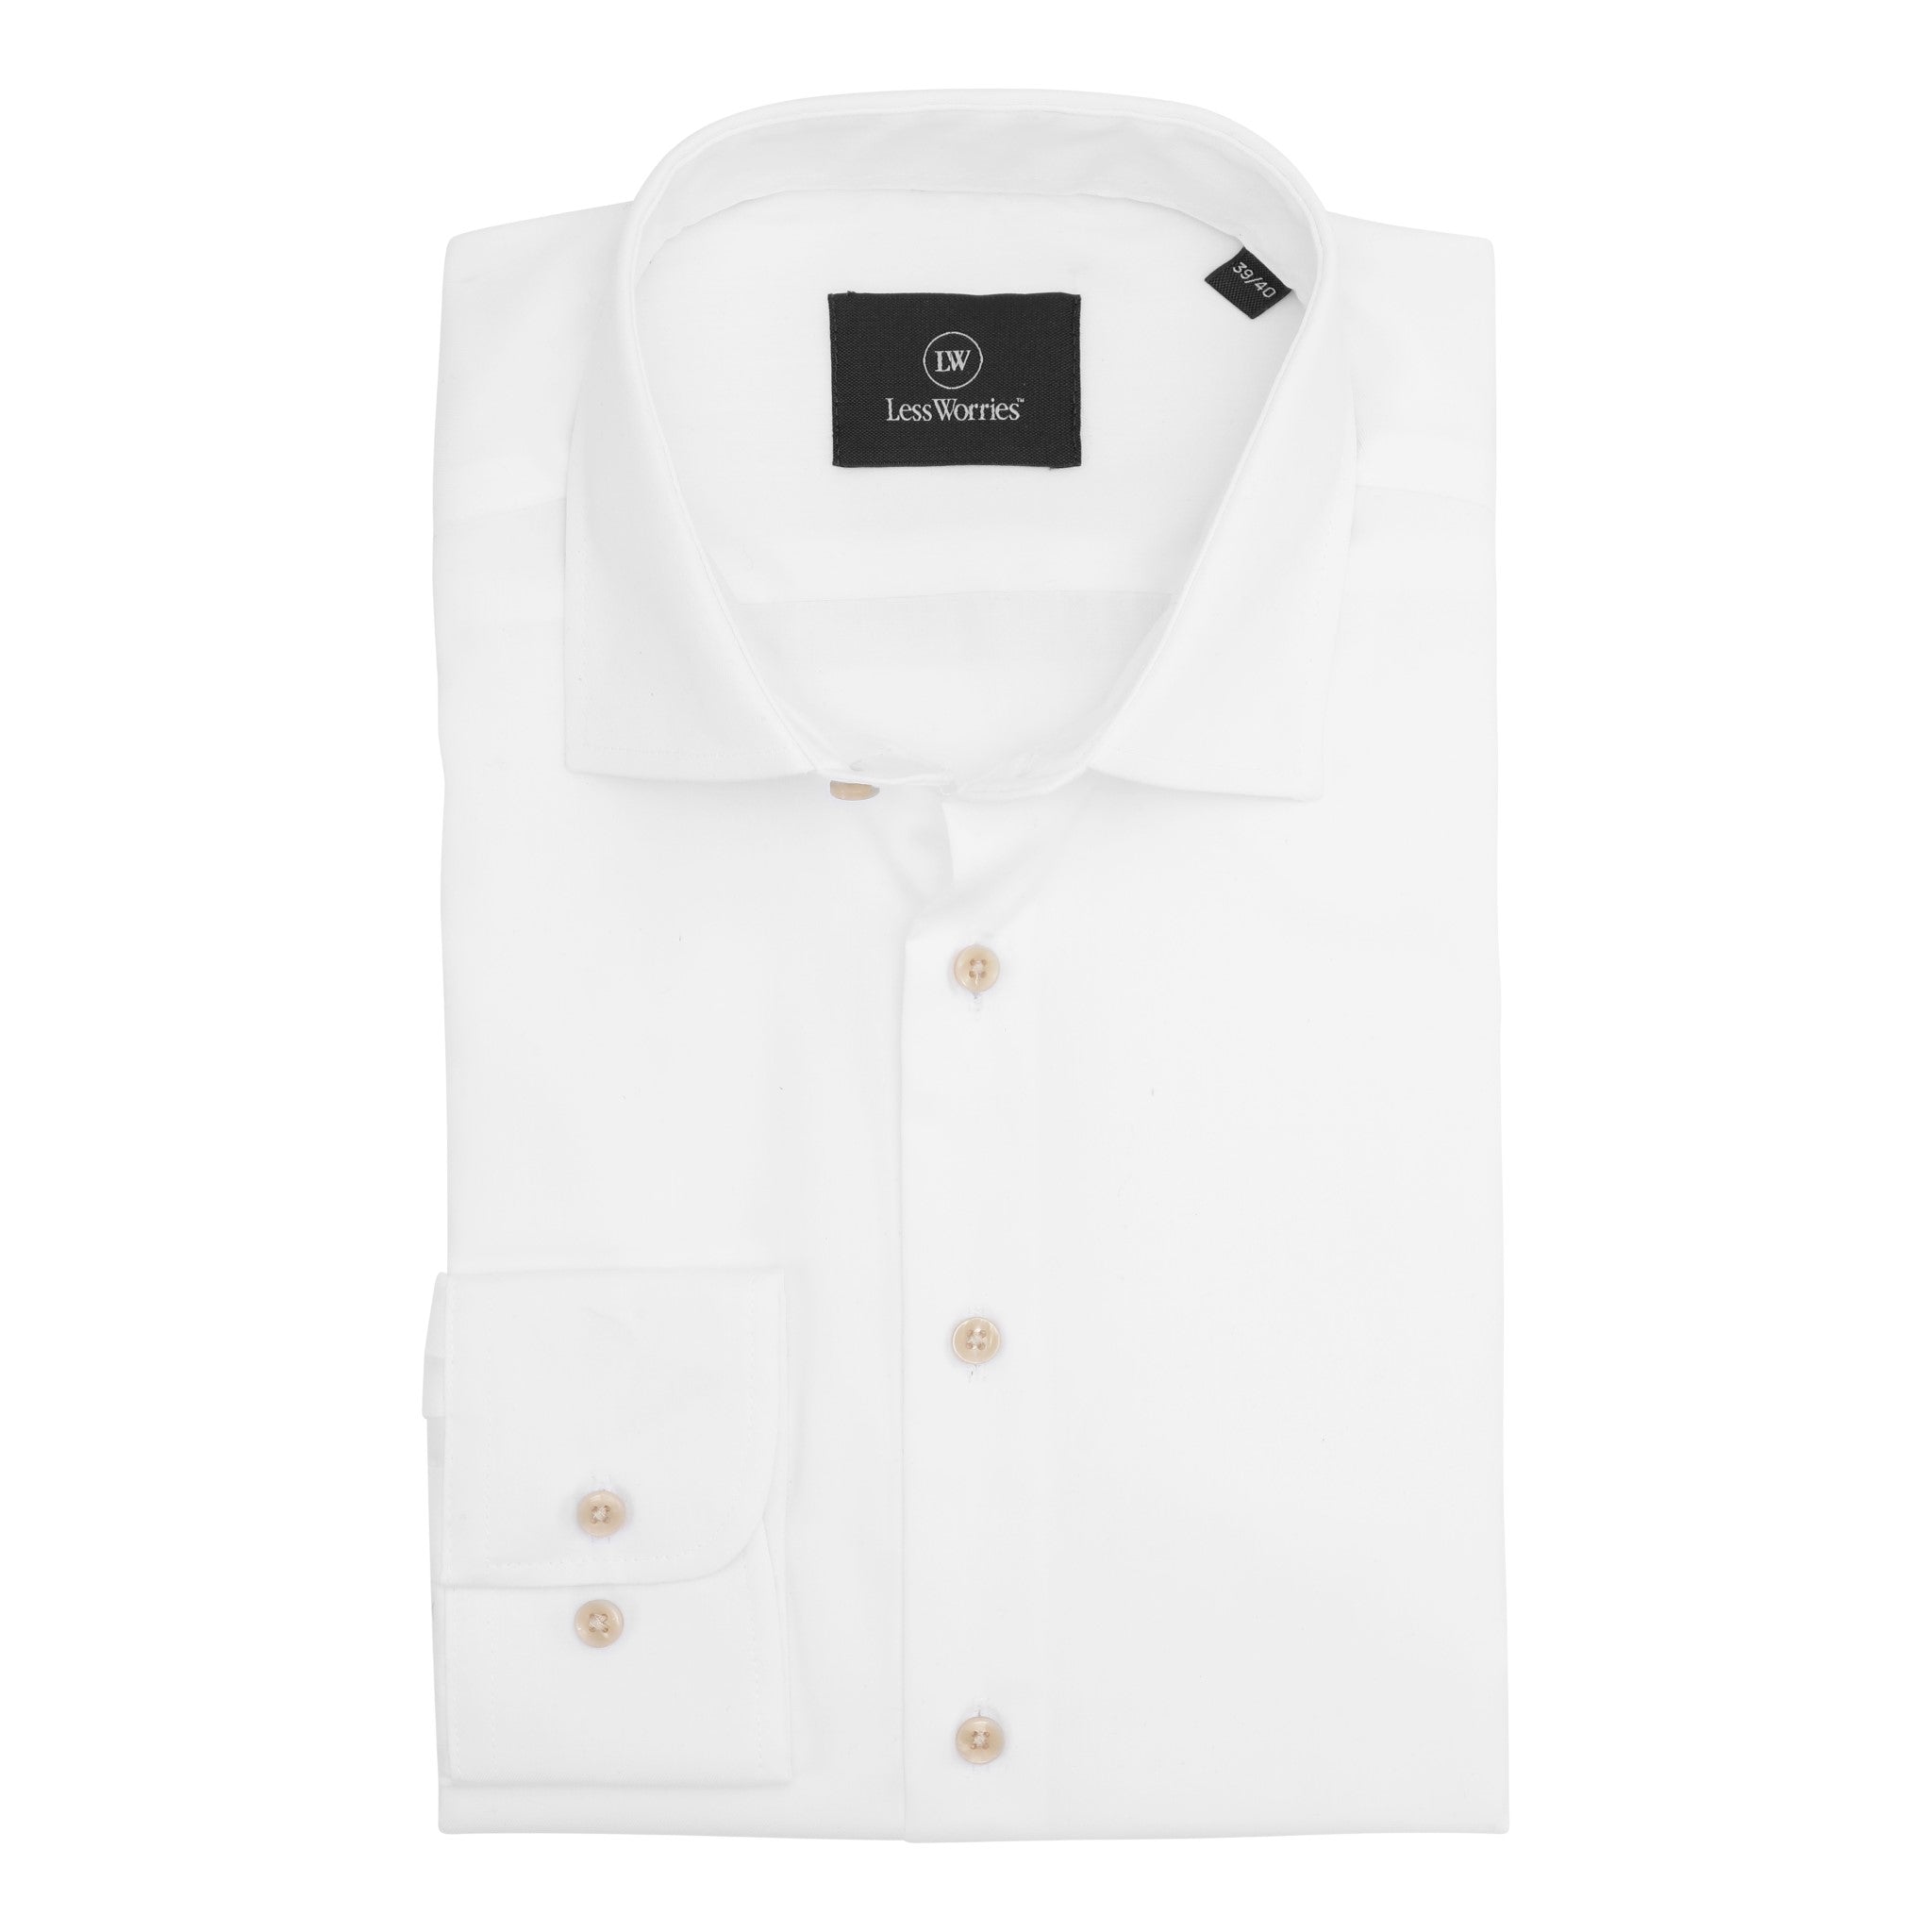 Premium White Dress Shirt